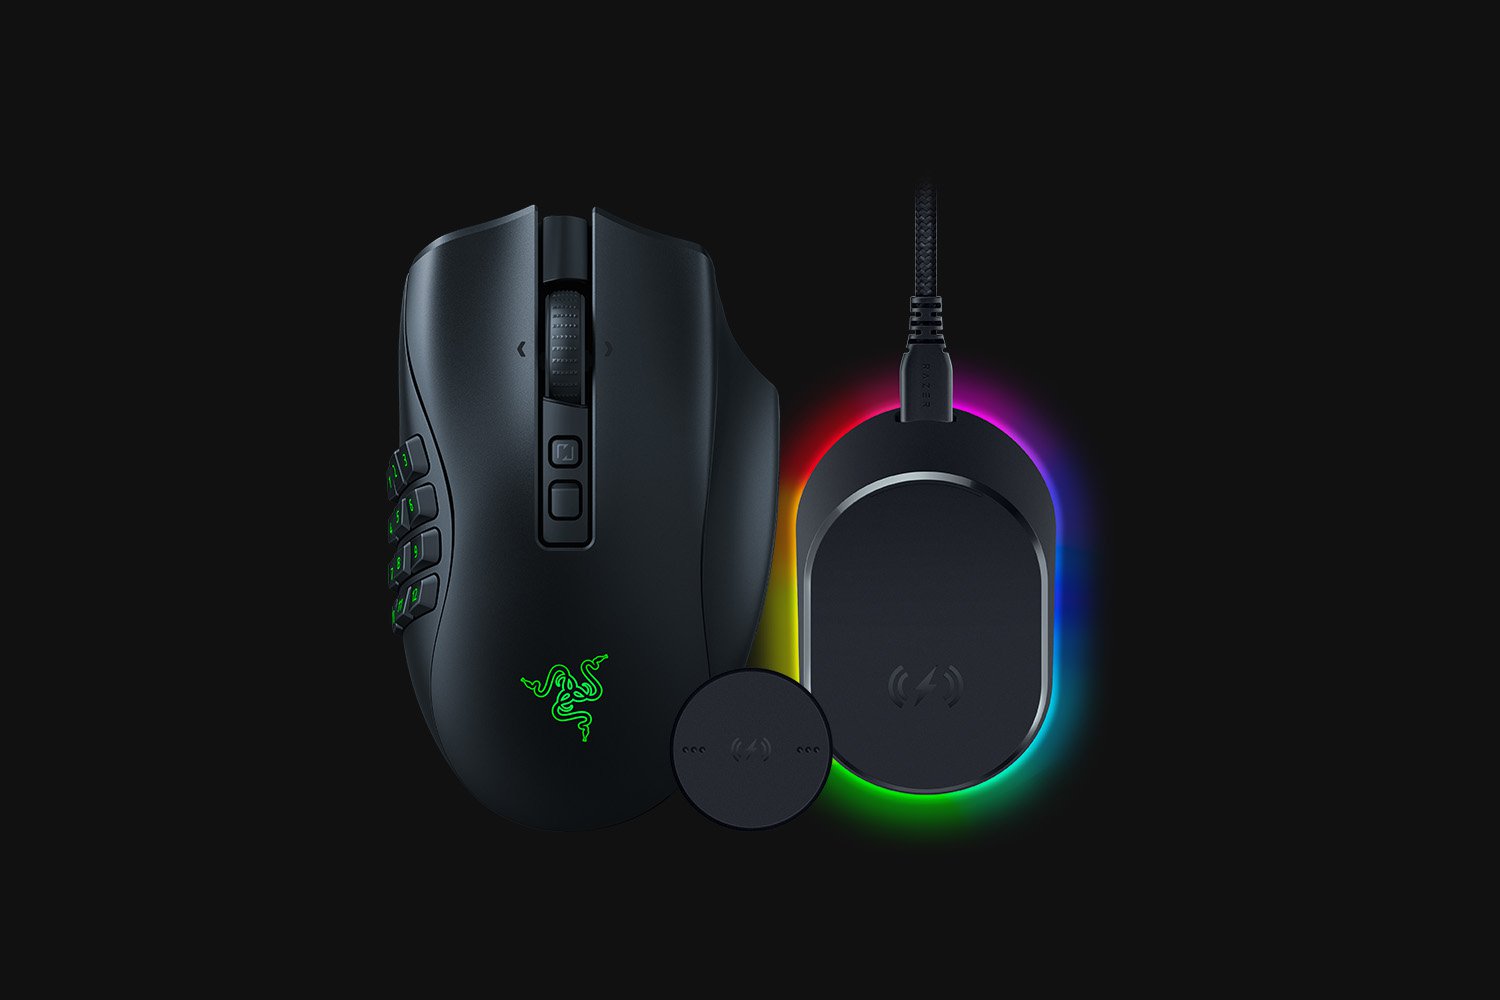 Razer Naga Pro Wireless Optical Gaming Mouse for PC